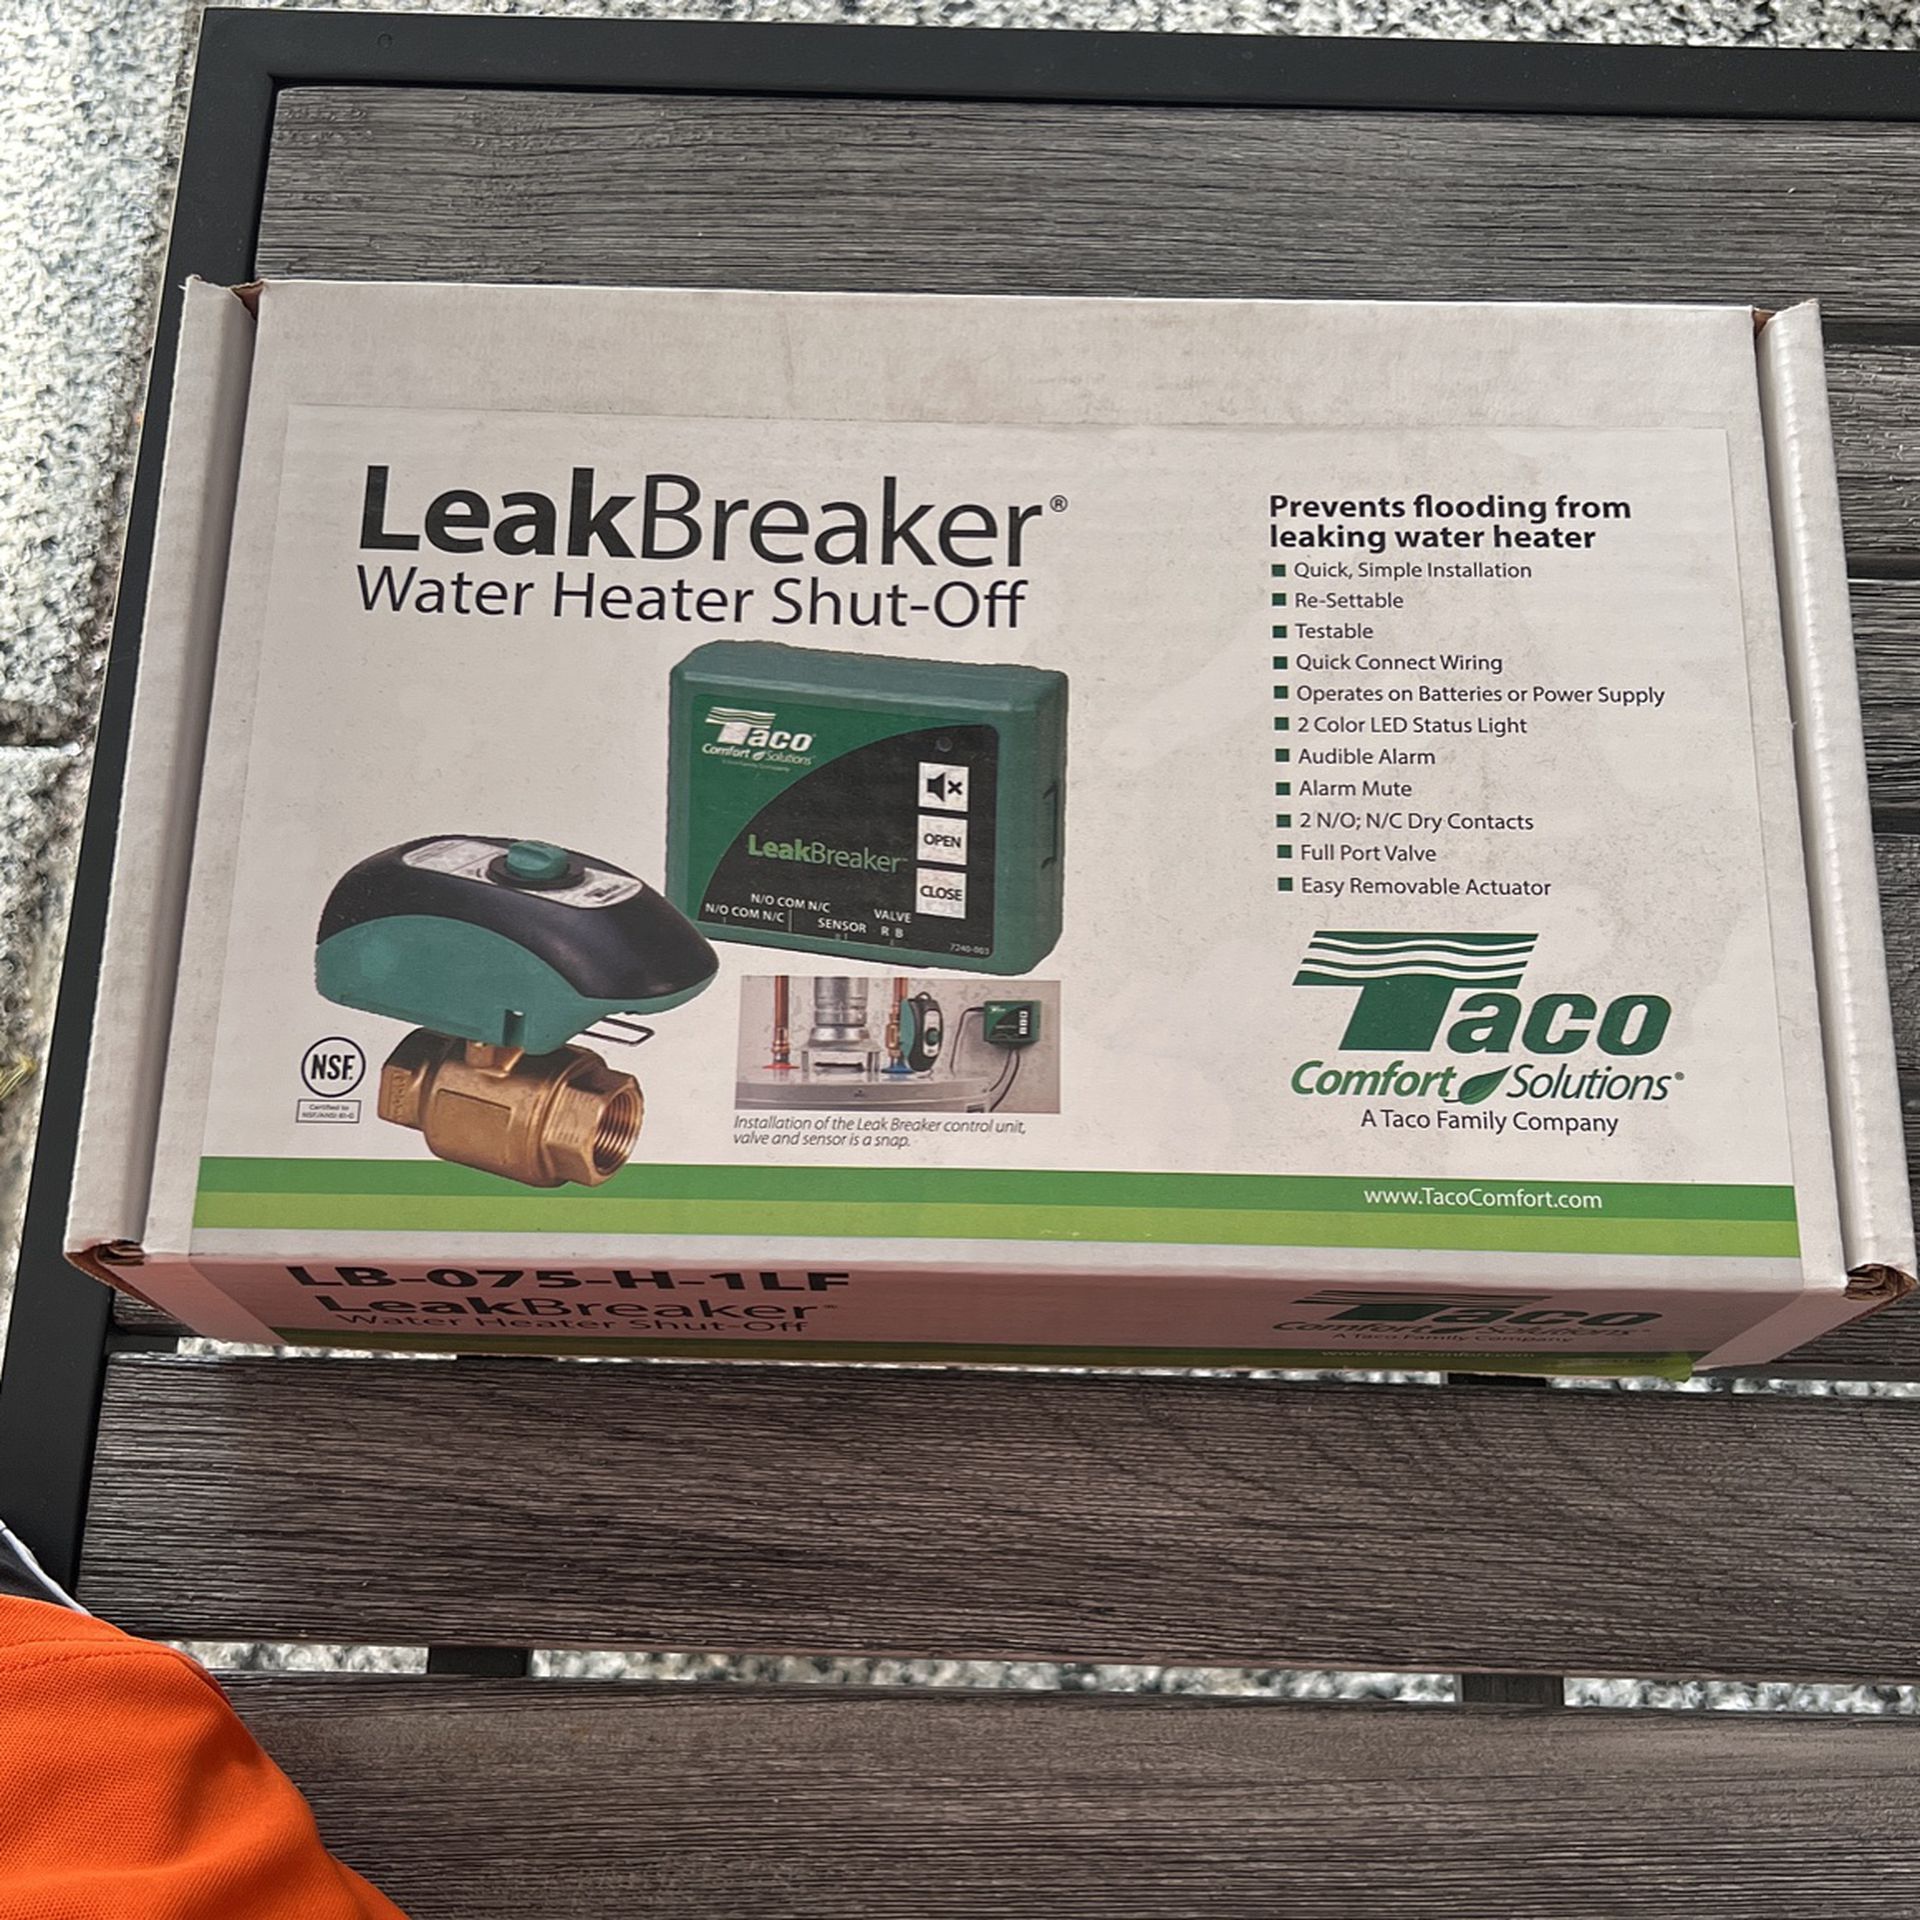 LeakBreaker Water Heater Shut-Off